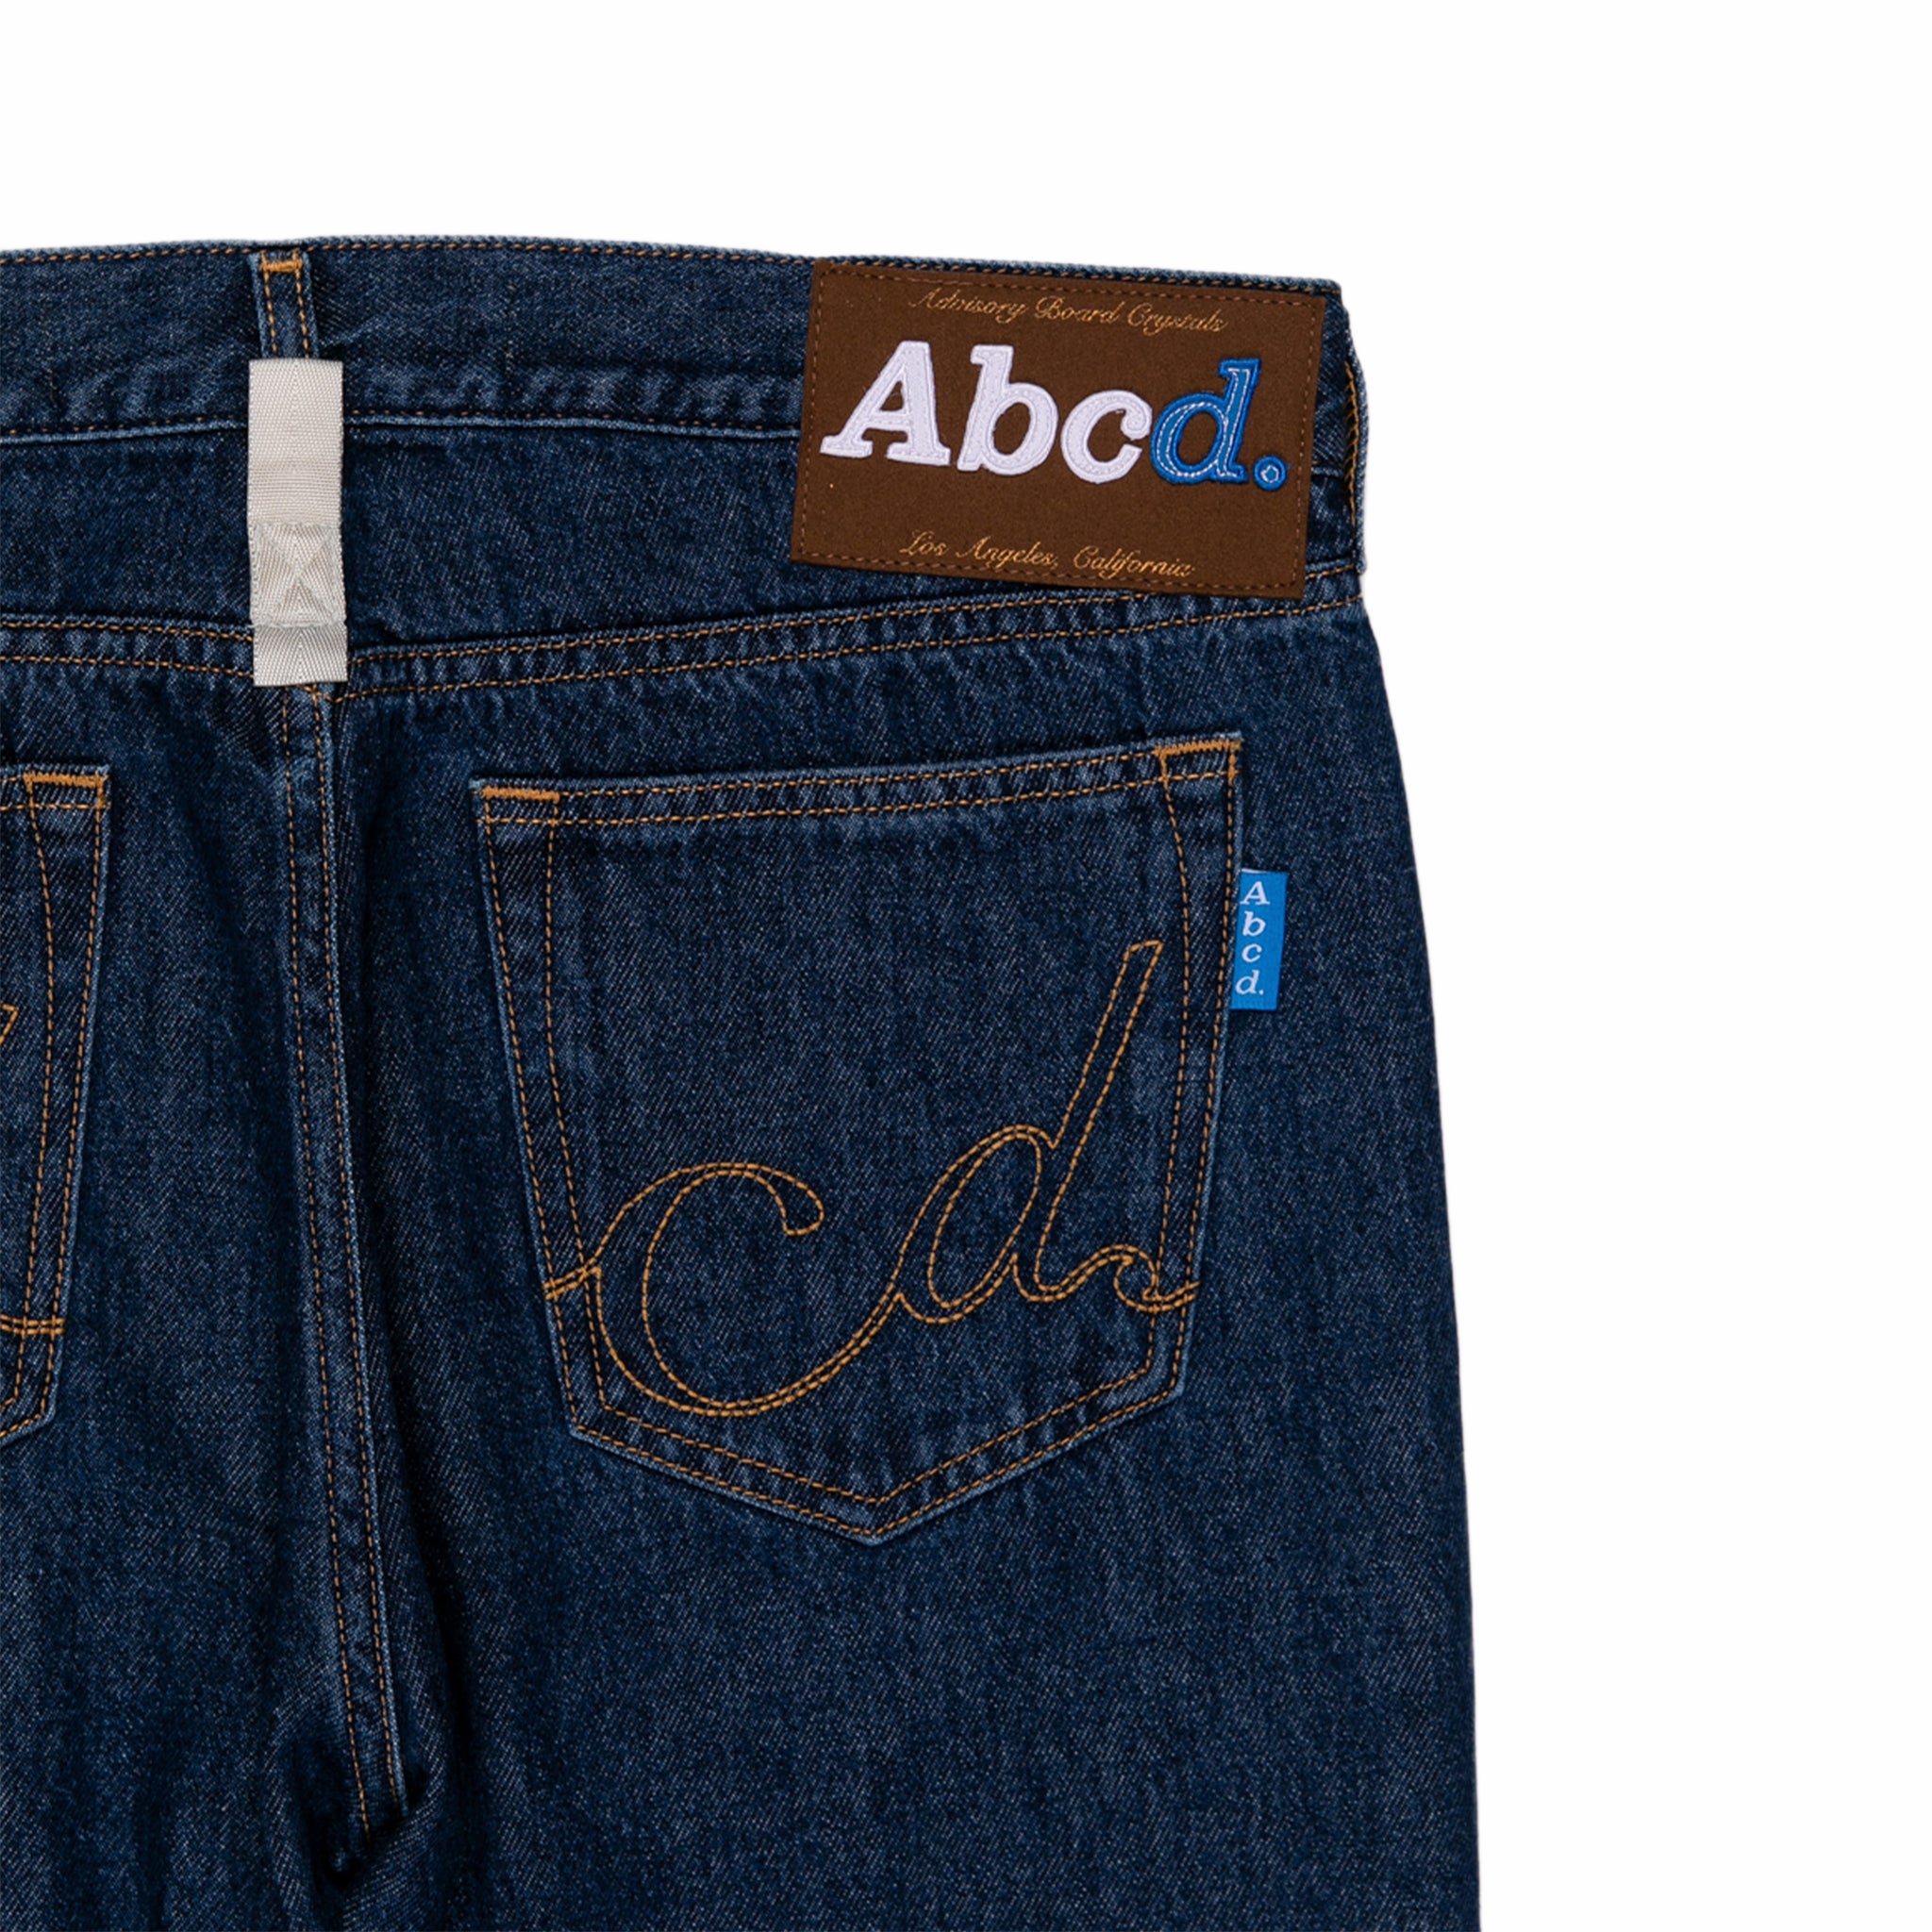 Abcd. Slim Fit Jean (Dark Blue Stonewash) - August Shop